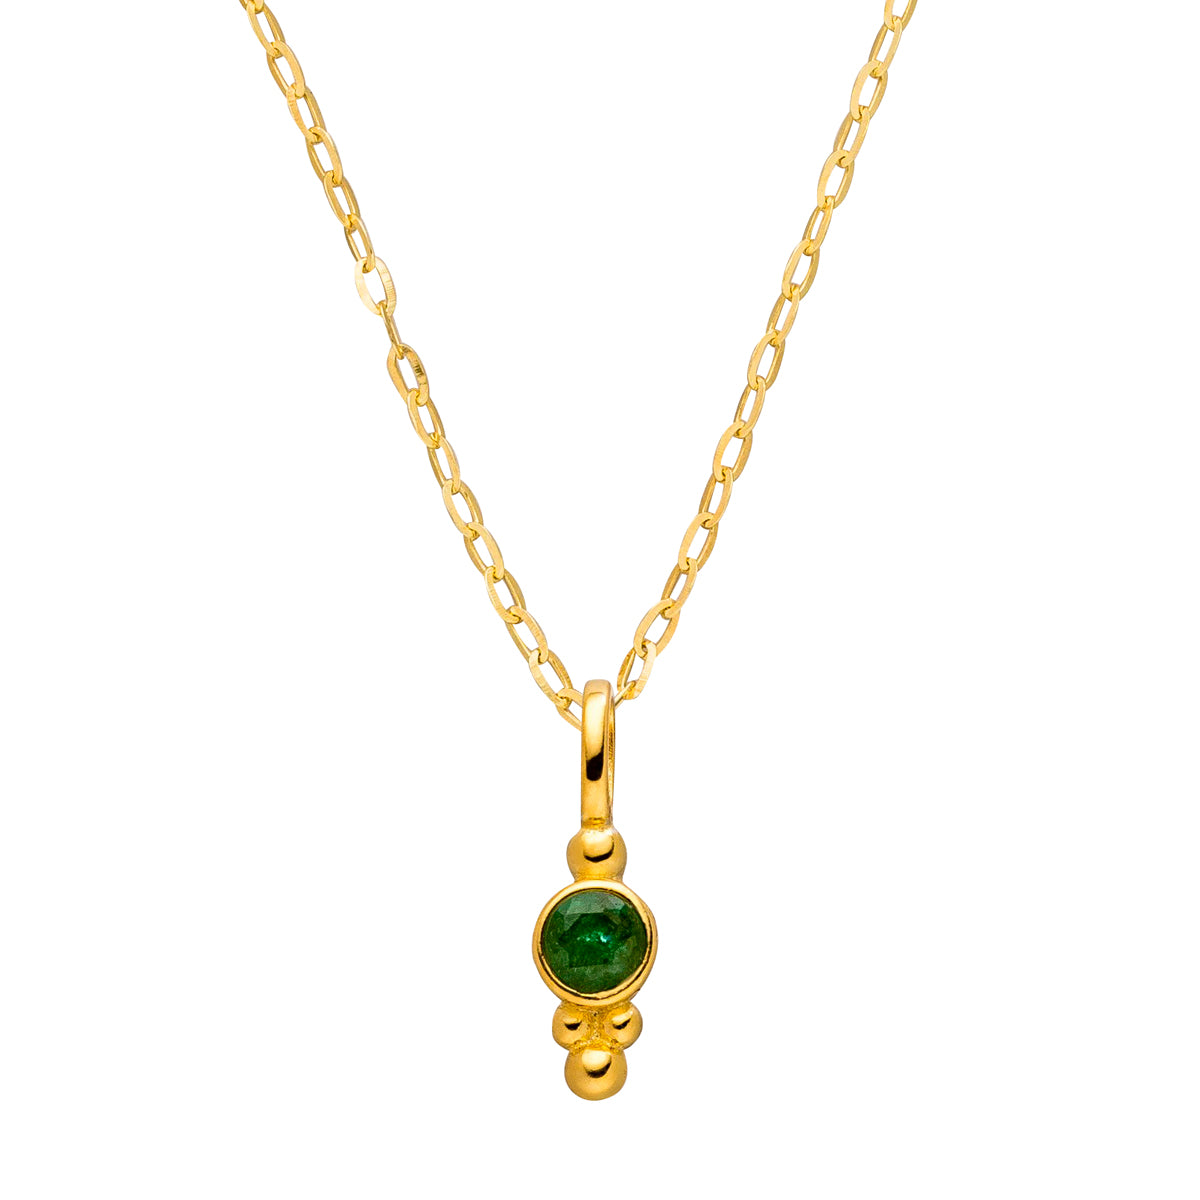 Geburtsstein Kette Mail mit grünem Smaragd an Gold- und Silberkette in verschiedenen Längen.